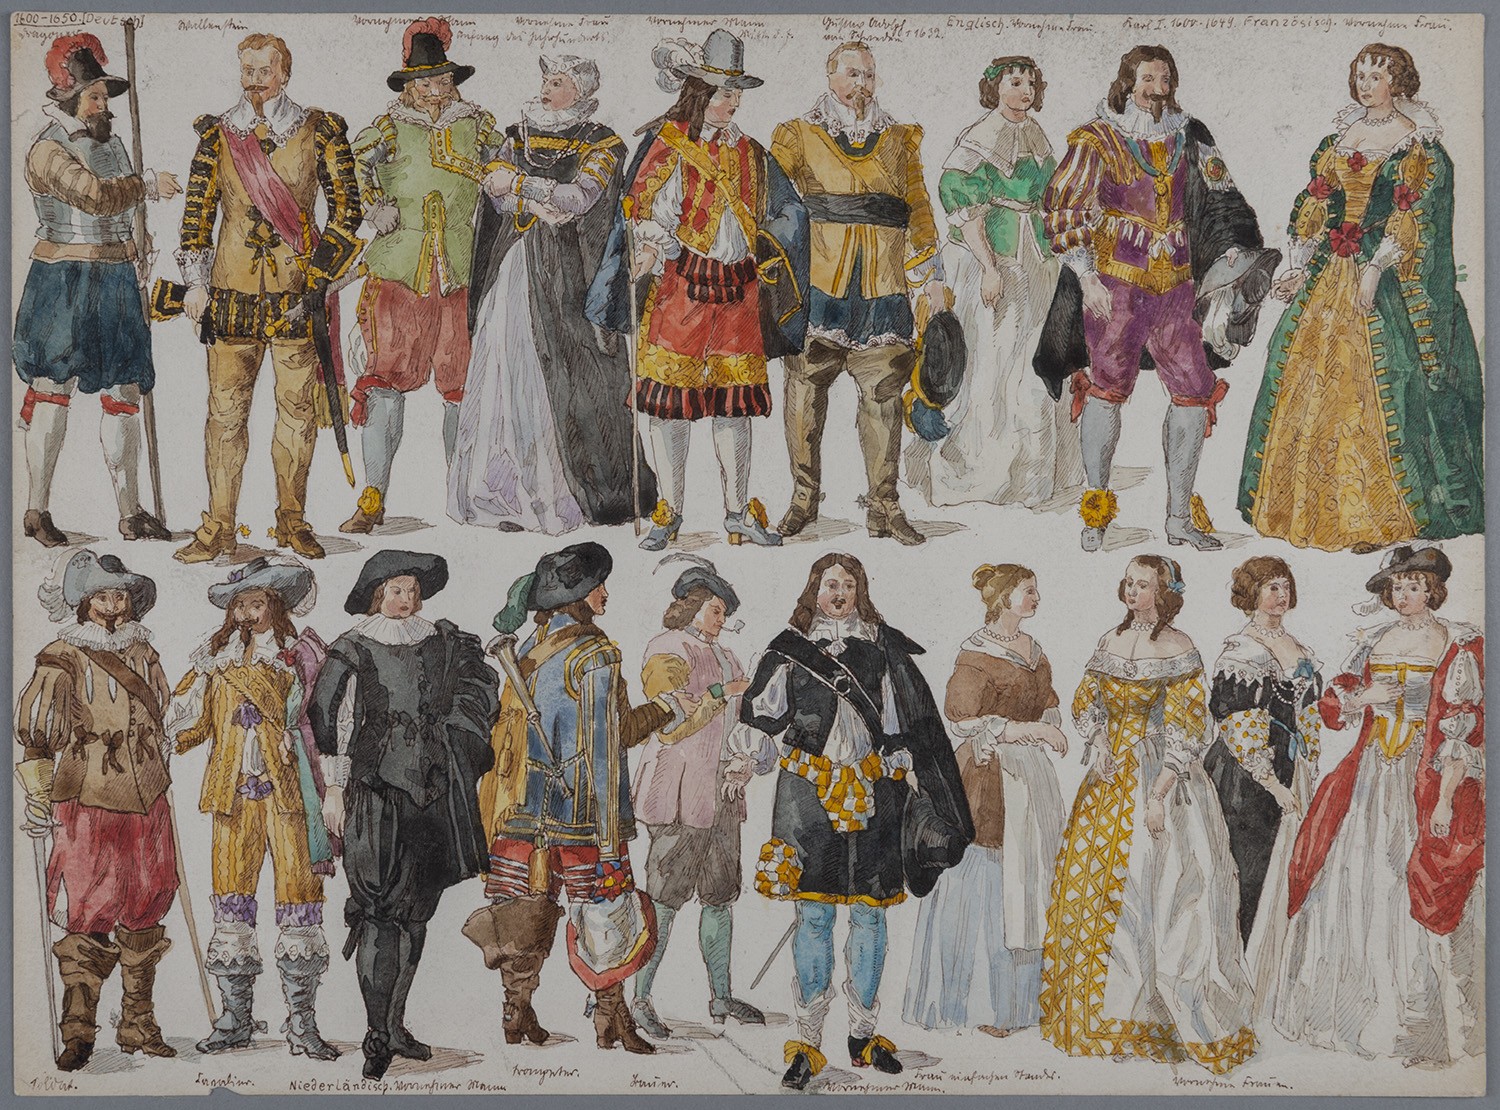 Standesbezogene Kleidung der 1. Hälfte des 17. Jahrhunderts (Landesgeschichtliche Vereinigung für die Mark Brandenburg e.V., Archiv CC BY)